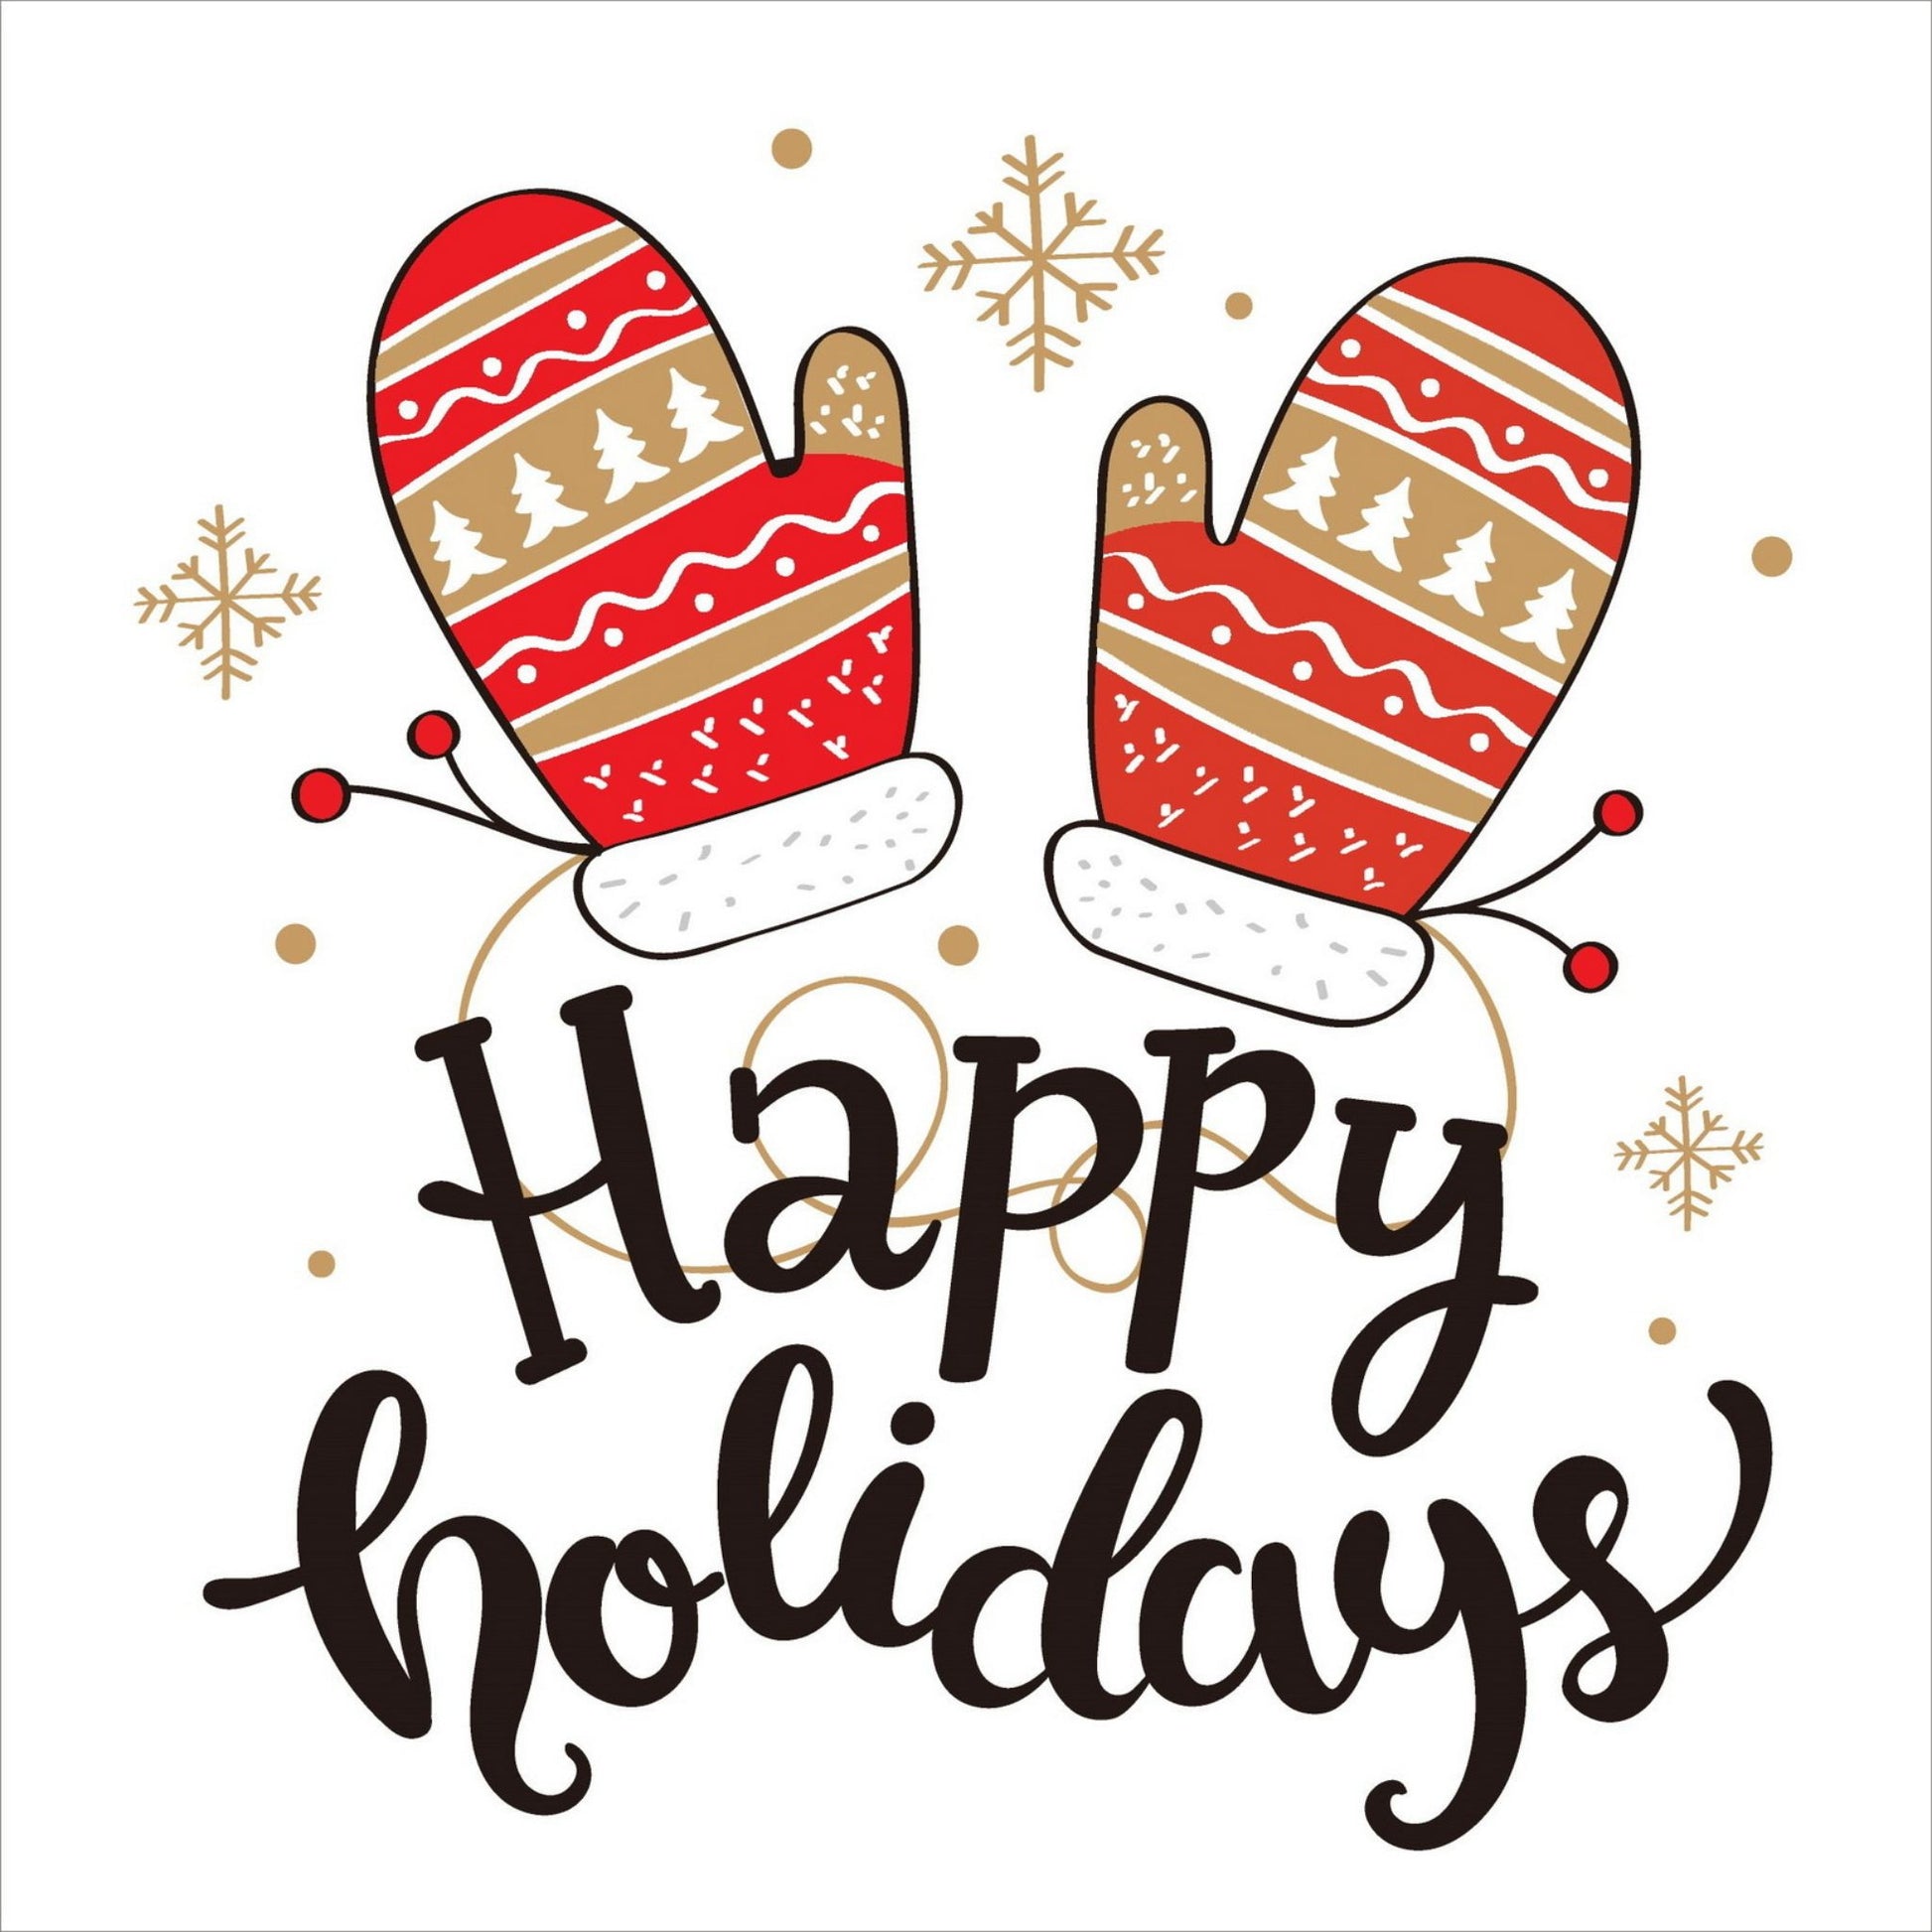 Søte julekort i håndtegnet cartoon. 10 pk. Fargemyanser i rød, grå, sort, hvit og gull. Motiv av et par røde votter med mønster i hvitt og gull. Tekst på kort "happy holidays"